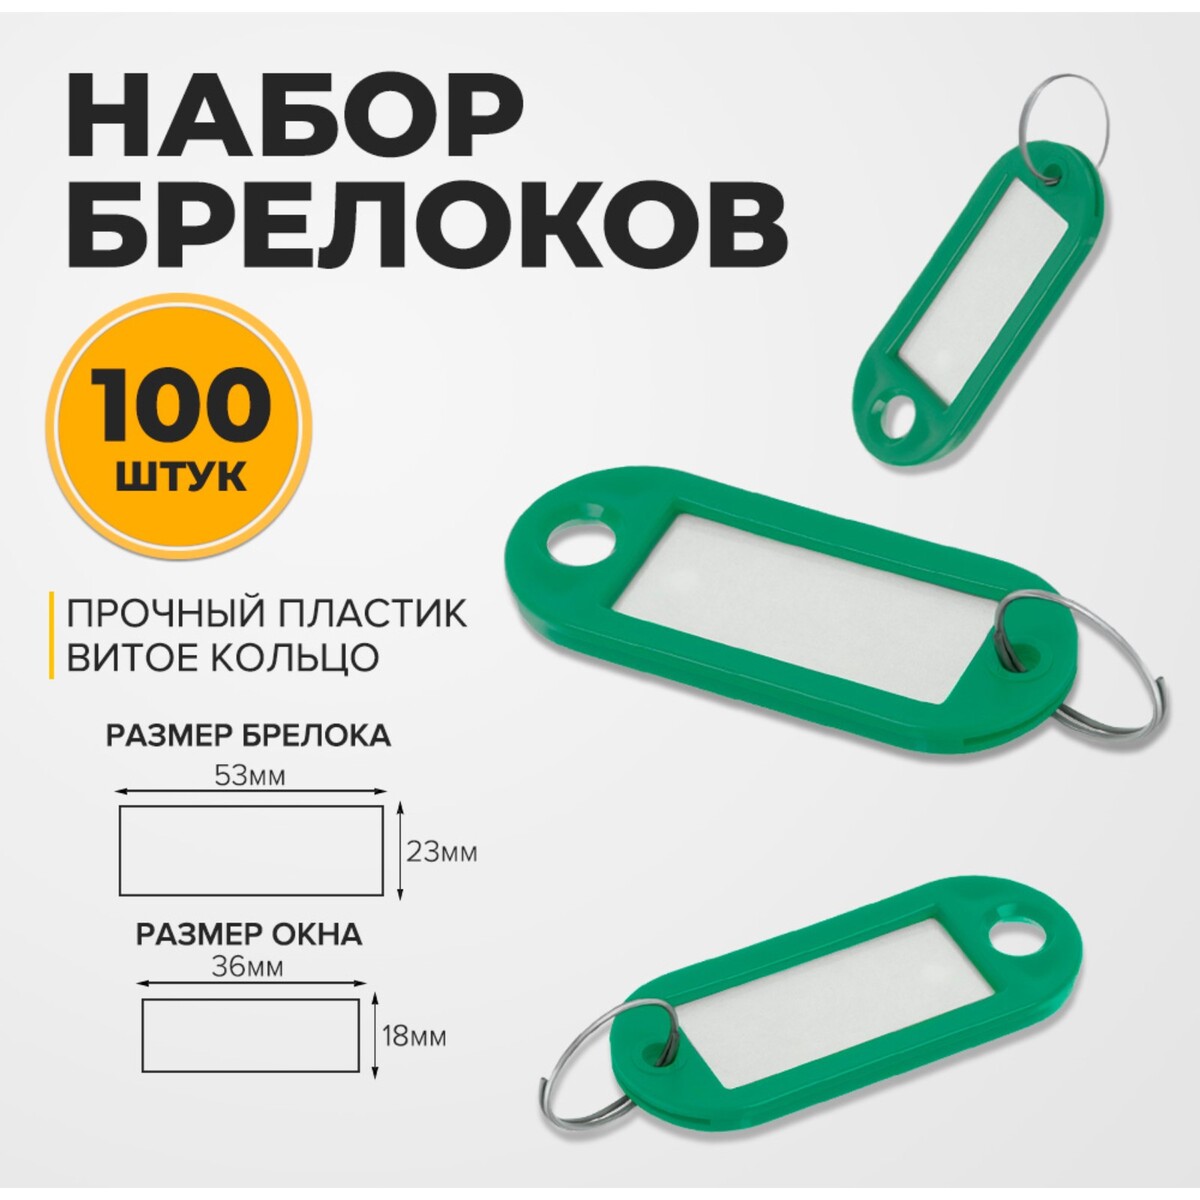 Набор брелоков для ключей, 100 штук, 53 мм, цвет зеленый